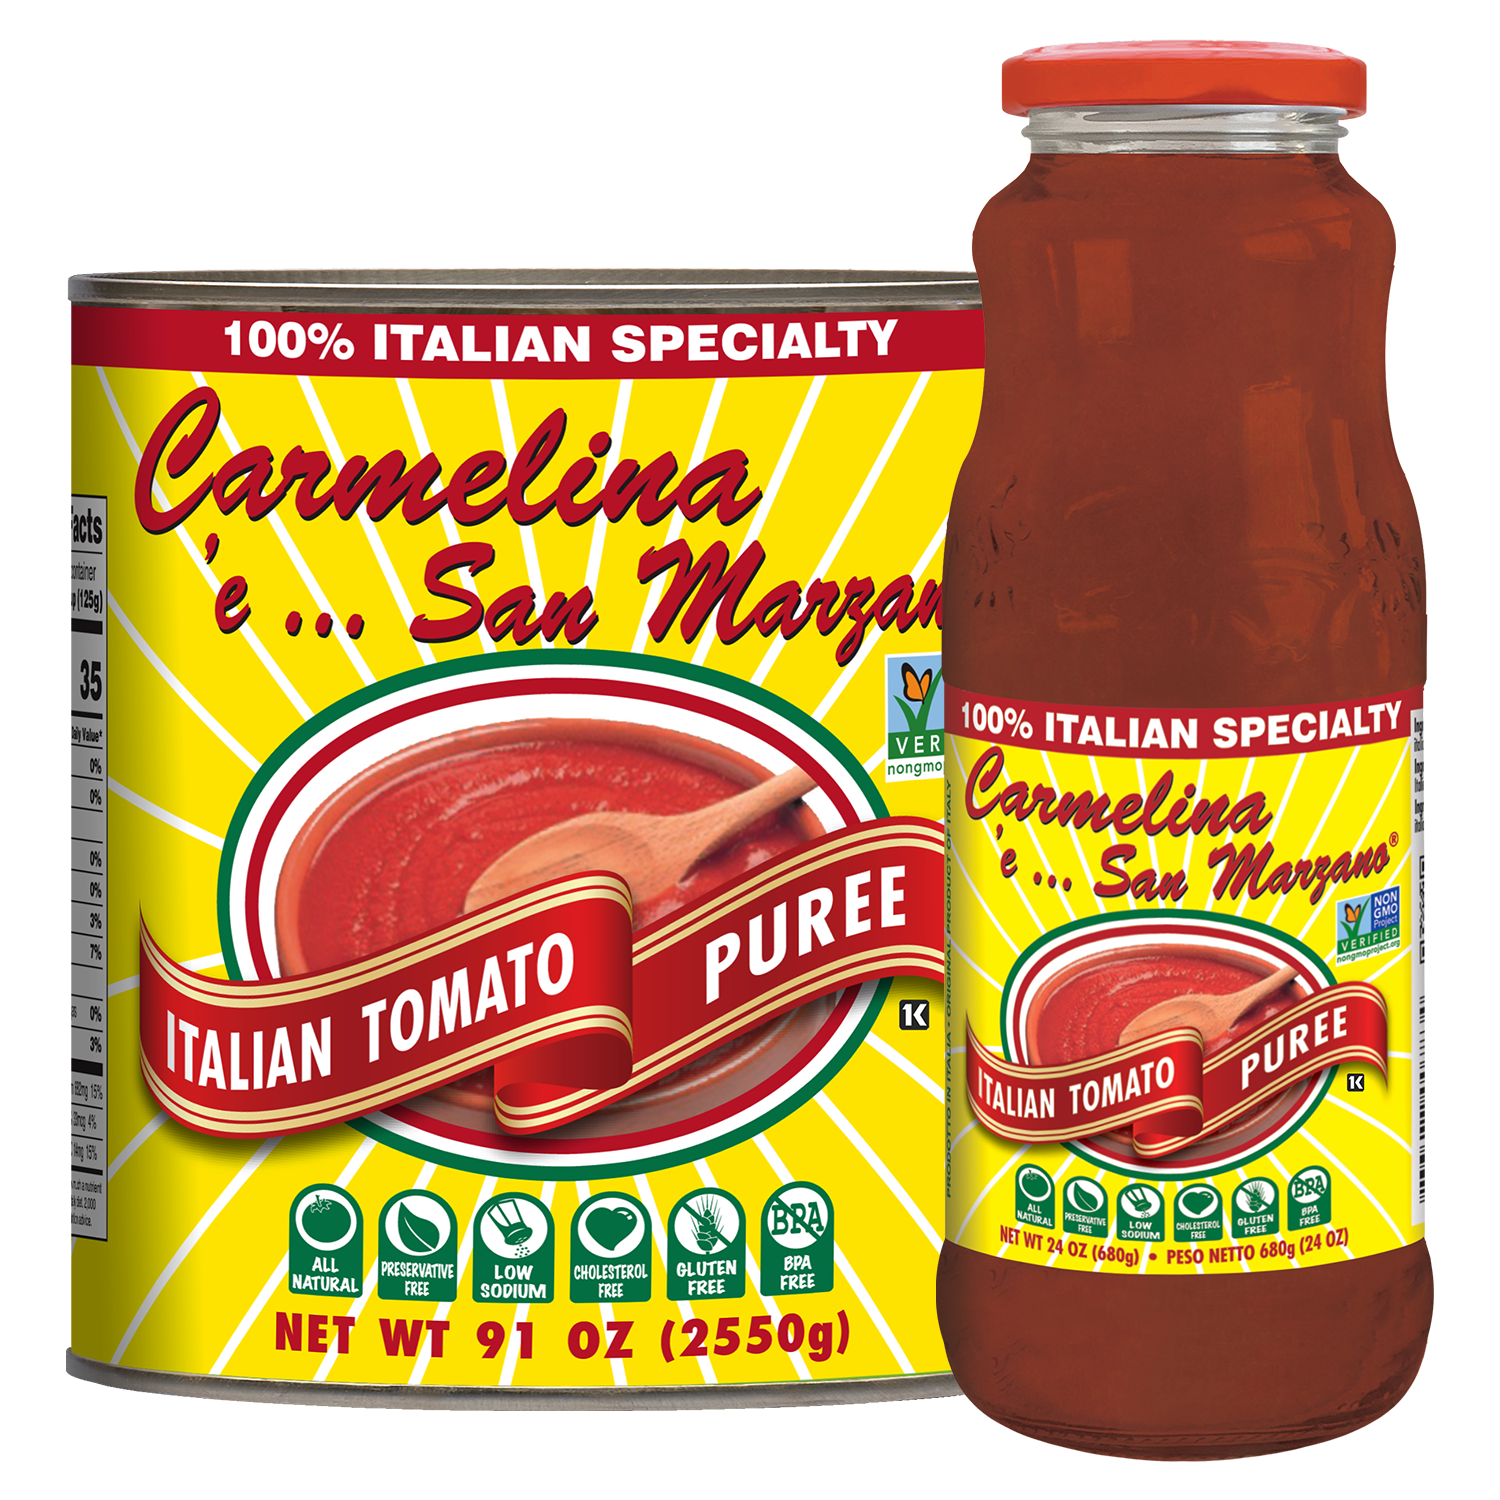 Italian Tomato Puree (Passata)